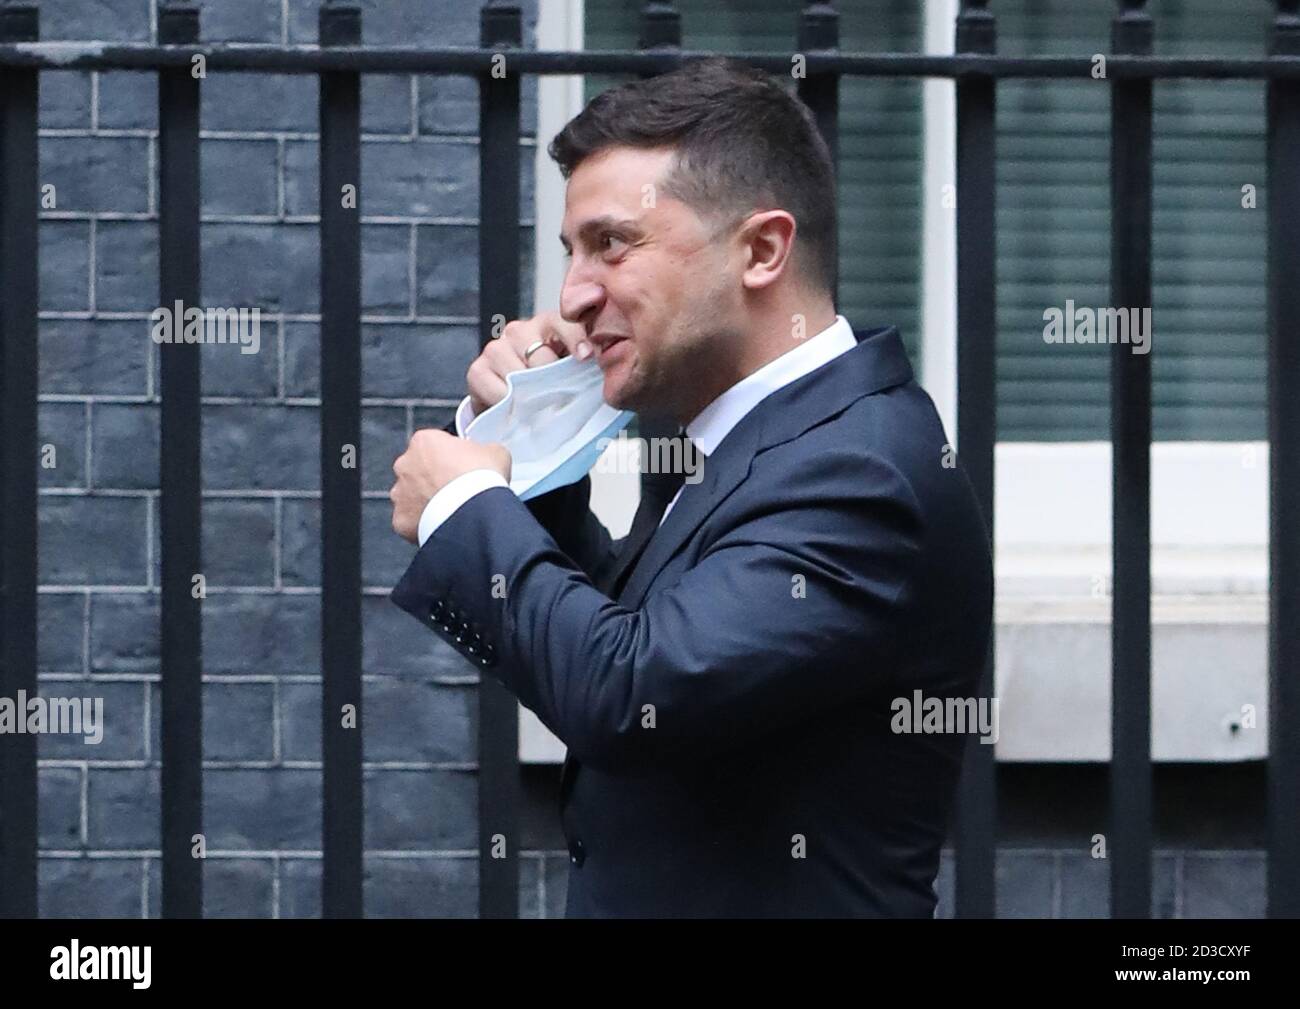 Volodymyr Zelenskyy, président de l'Ukraine, arrive à Downing Street, Londres, avant une rencontre avec le Premier ministre Boris Johnson pour signer un accord de partenariat stratégique avec le président face au « comportement de la Russie envers le pays ». Banque D'Images